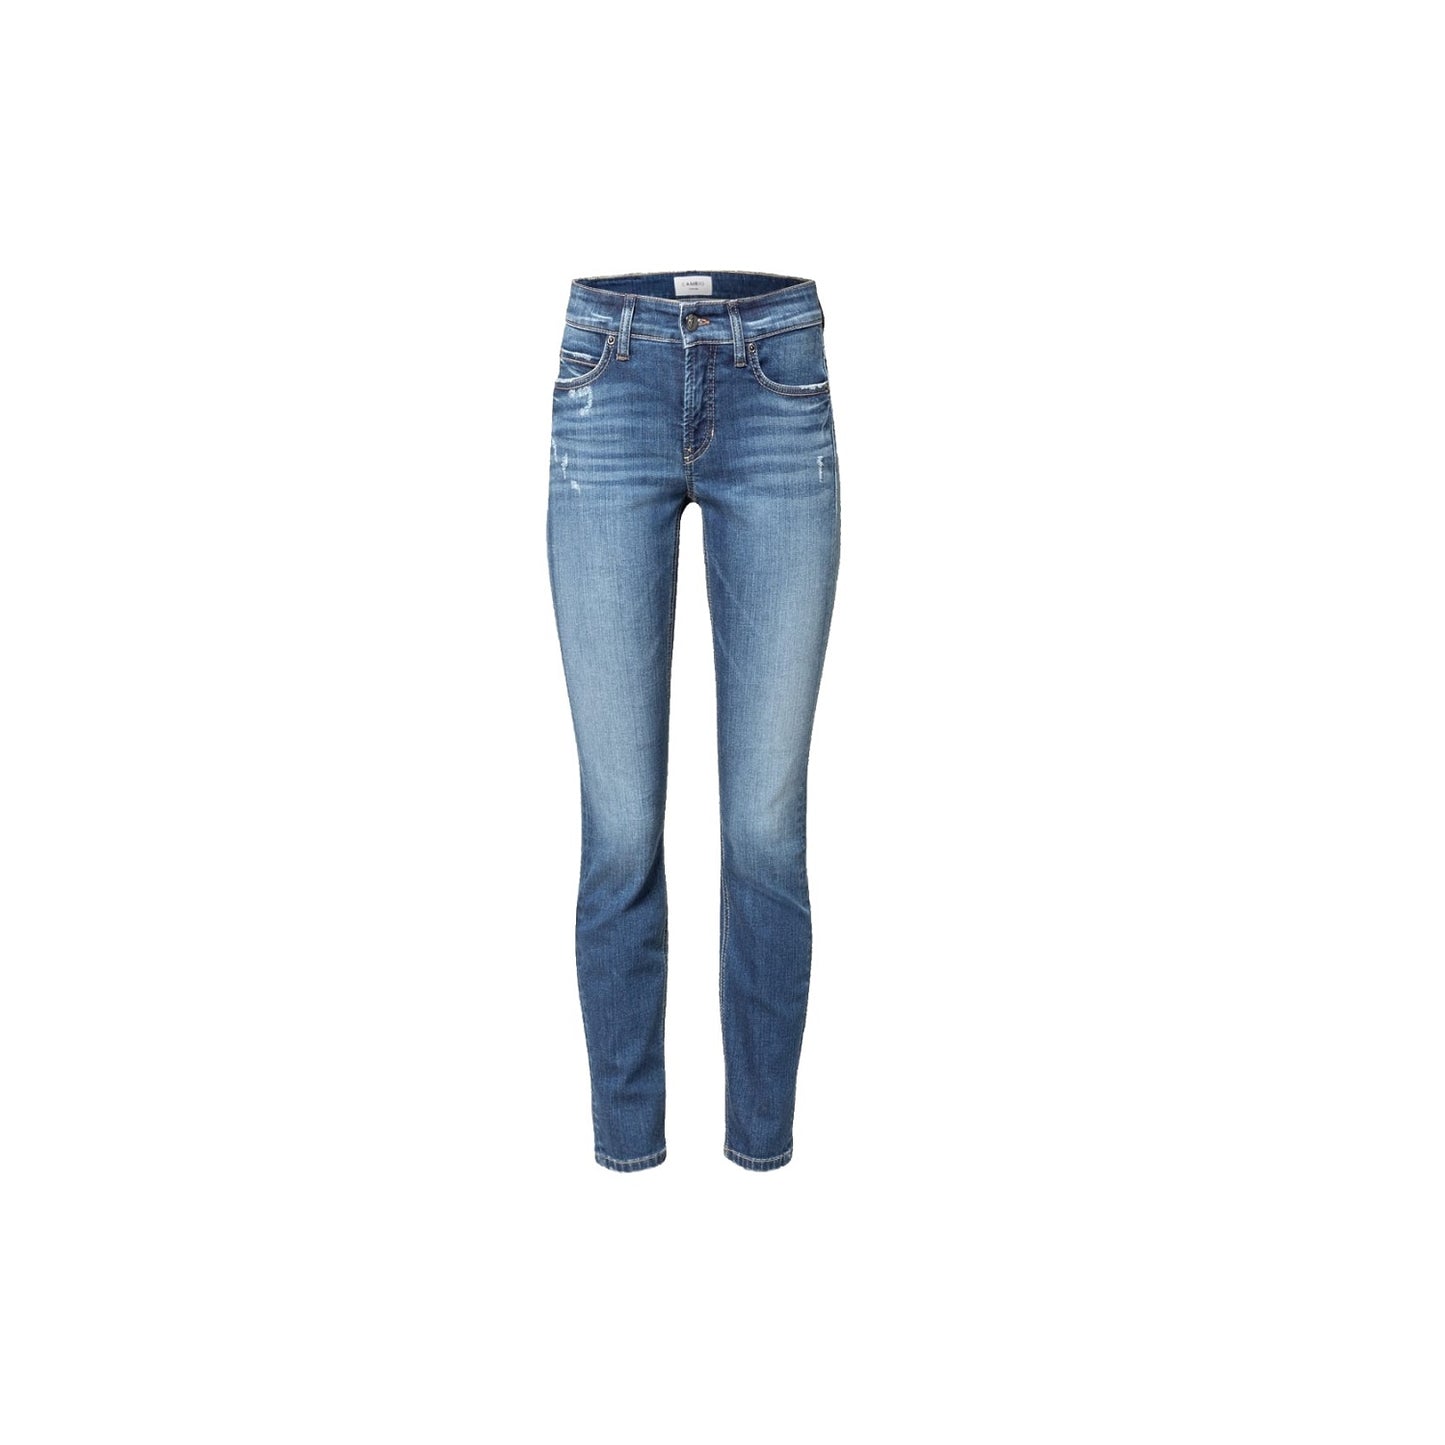 Cambio Jeans Paris ankle cut online kaufen. Slim fit Jeans mit destroyed Elementen von Cambio. 5-Pocket Denim Hose in mittelblauer Waschung mit verkürzter Länge aus der neuen Cambio Kollektion.